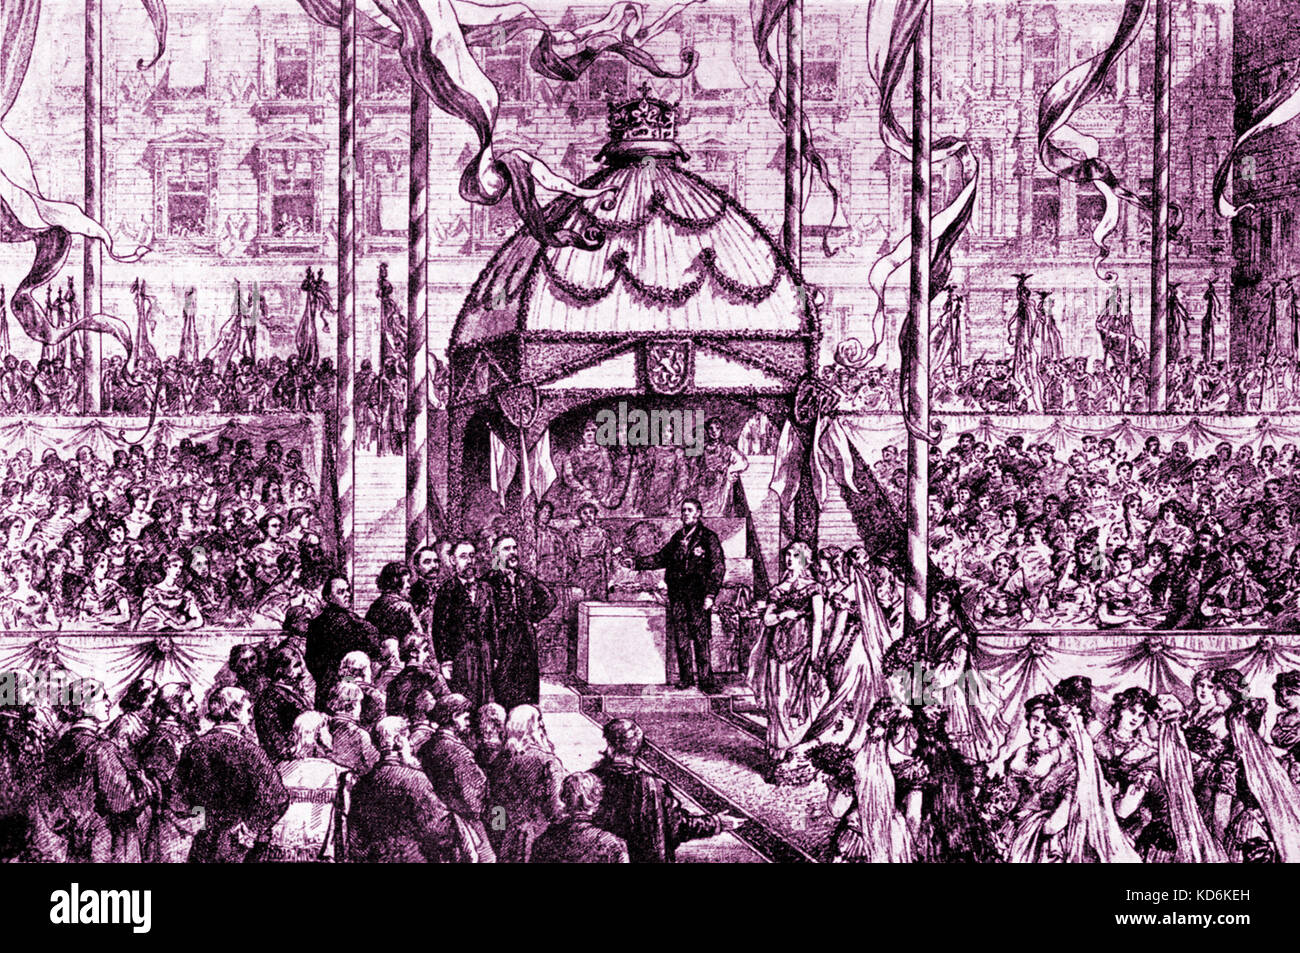 Cérémonie pour la pose de la première pierre de fondation pour le Théâtre National de Prague, (note marteau). Smetana Comité permanent sur la gauche au premier plan. Compositeur bohémien, 1824-1884. Banque D'Images